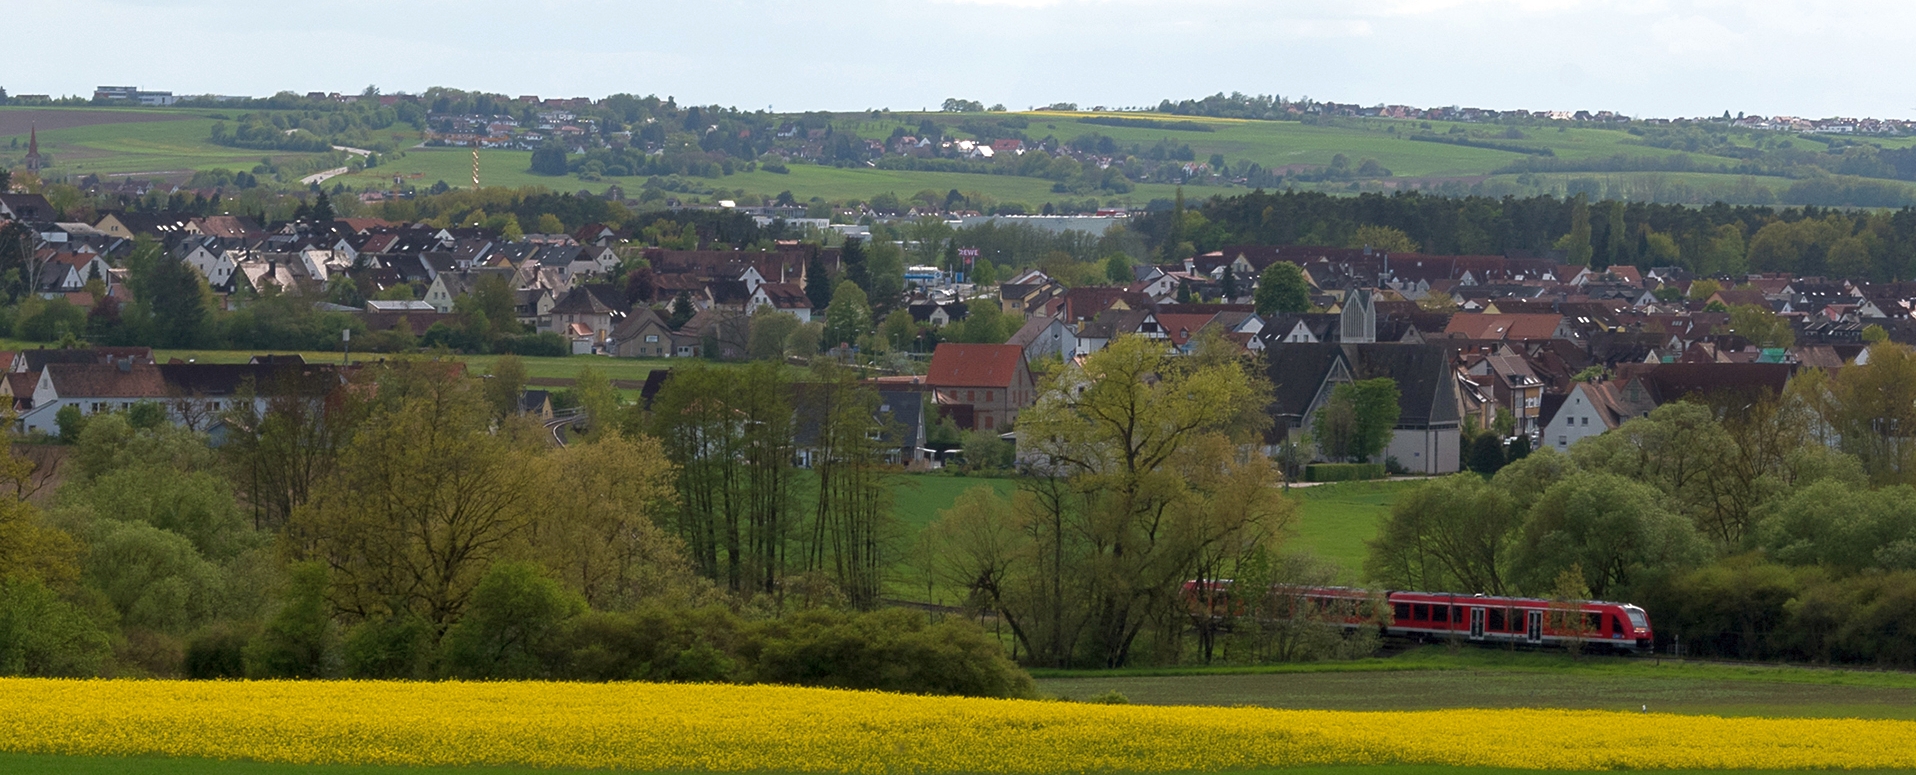 Blick auf die Ortschaft Forth mit Rapsfeldern im Vordergrund, der Gräfenbergbahn zwischen Bäumen und dem hellblauen Himmel im Hintergrund